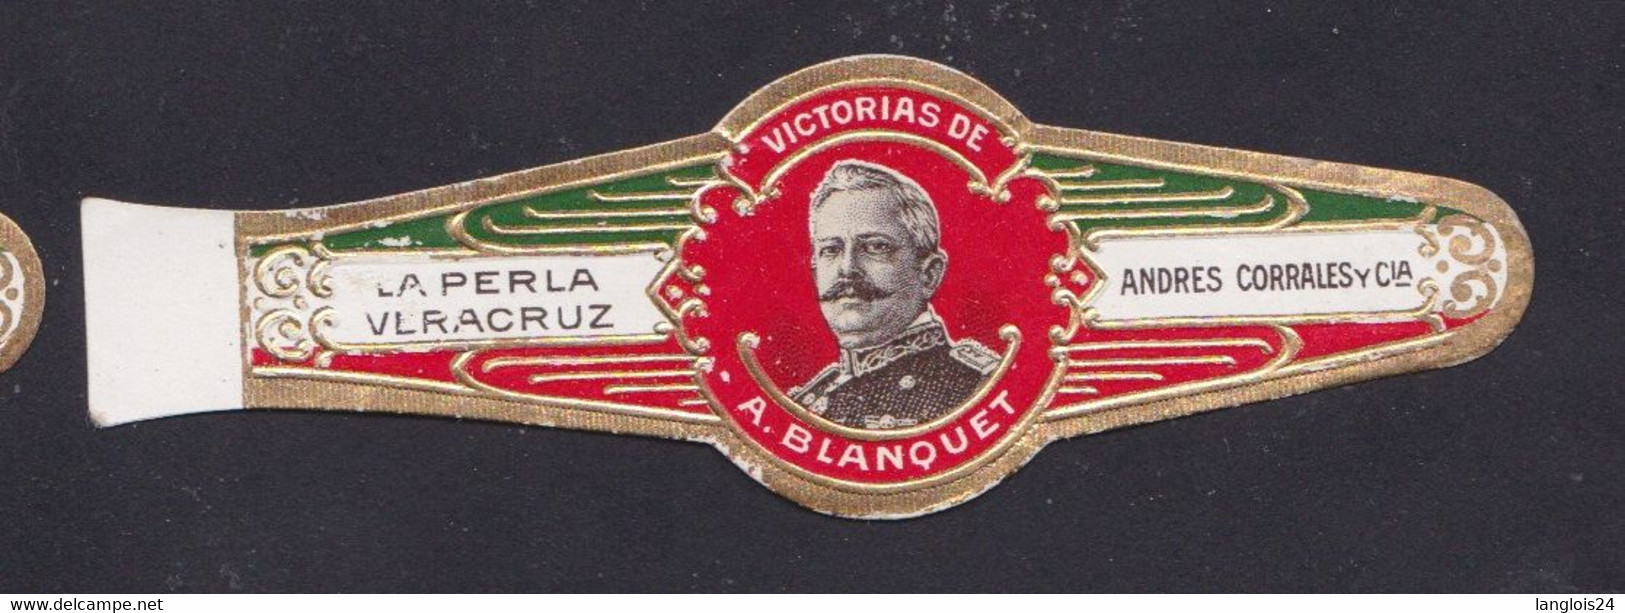 Ancienne Bague De Cigare Vitola B177 Homme Blanquet - Bagues De Cigares